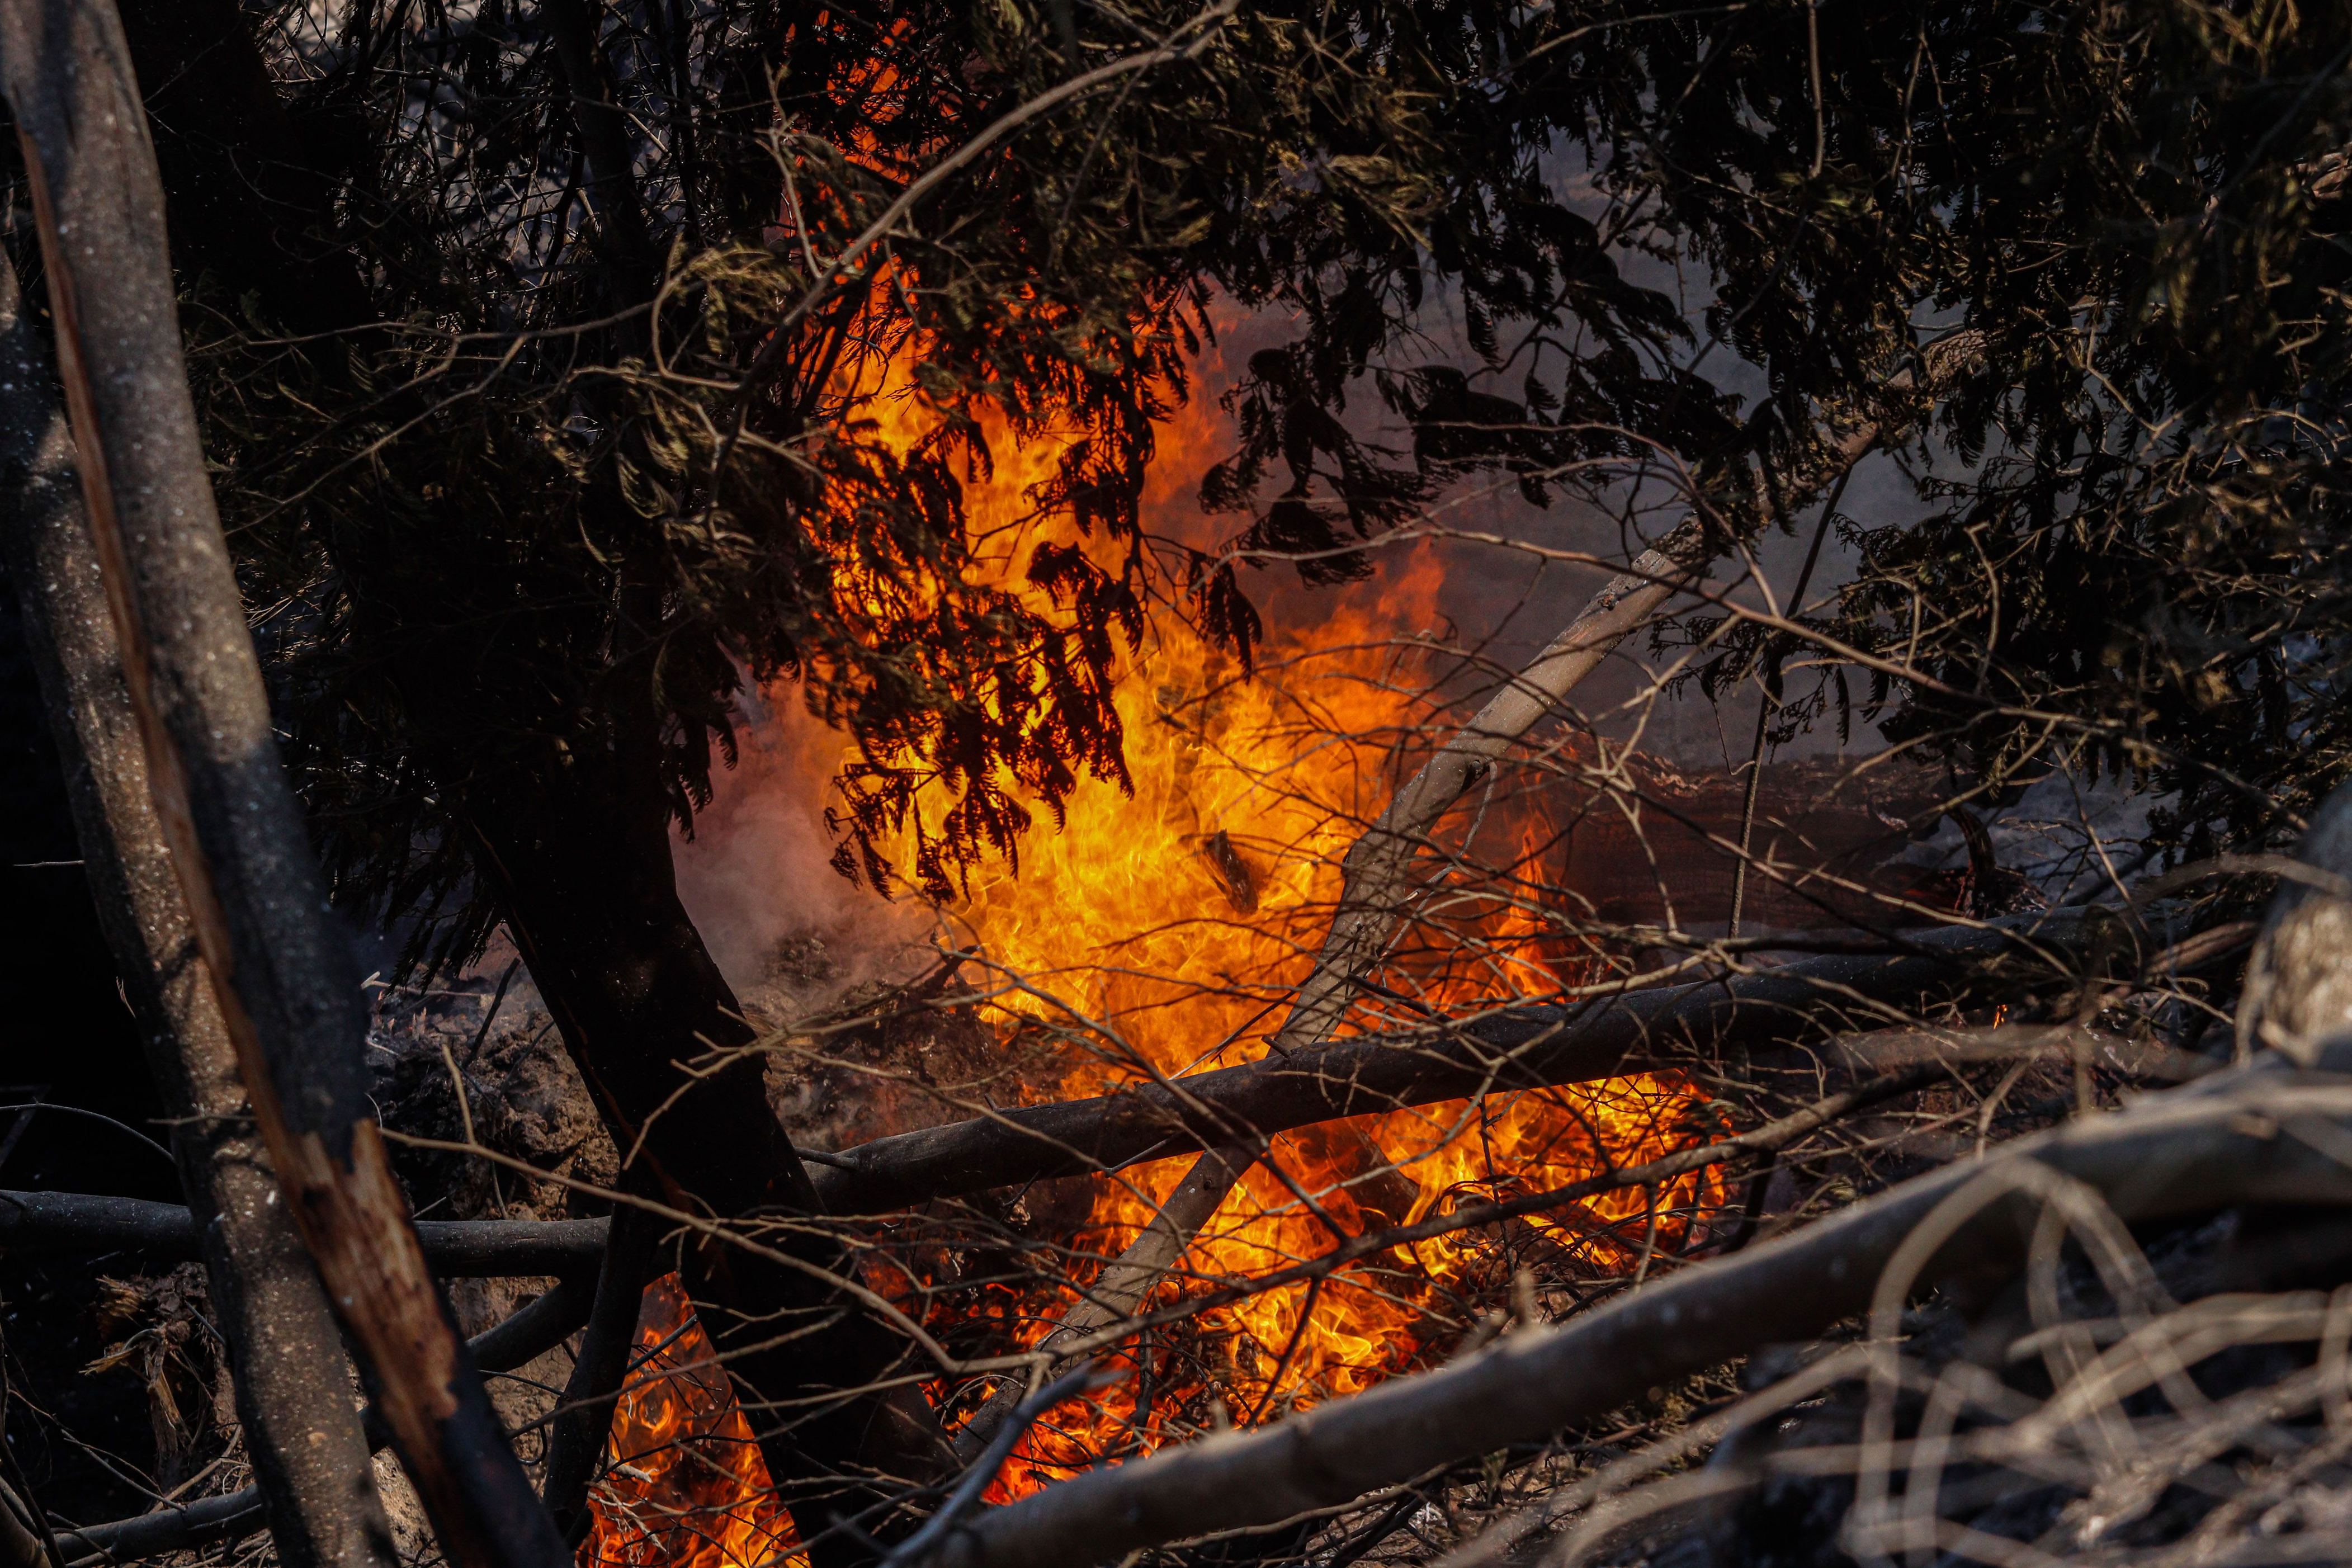 “uso imprudente de maquinaria”: imputados por incendio en cerro ñielol son puestos en libertad